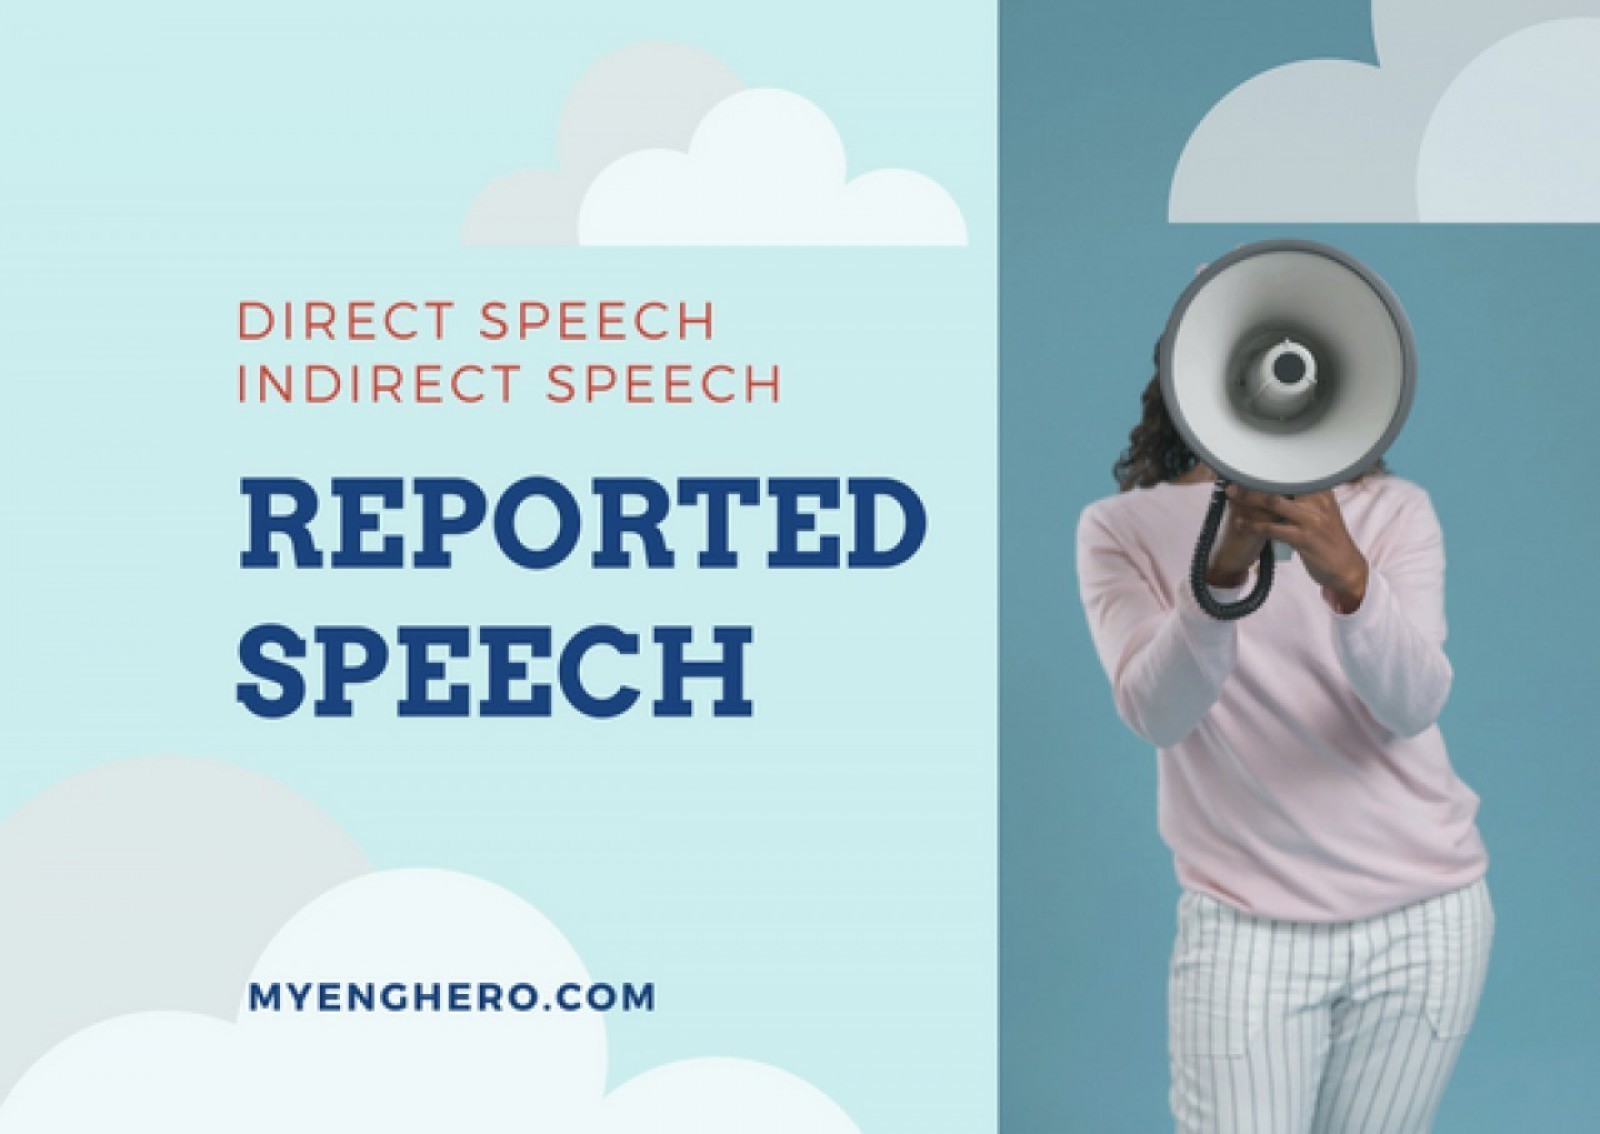 การถ่ายทอดคำพูดของผู้อื่น (Reported Speech)